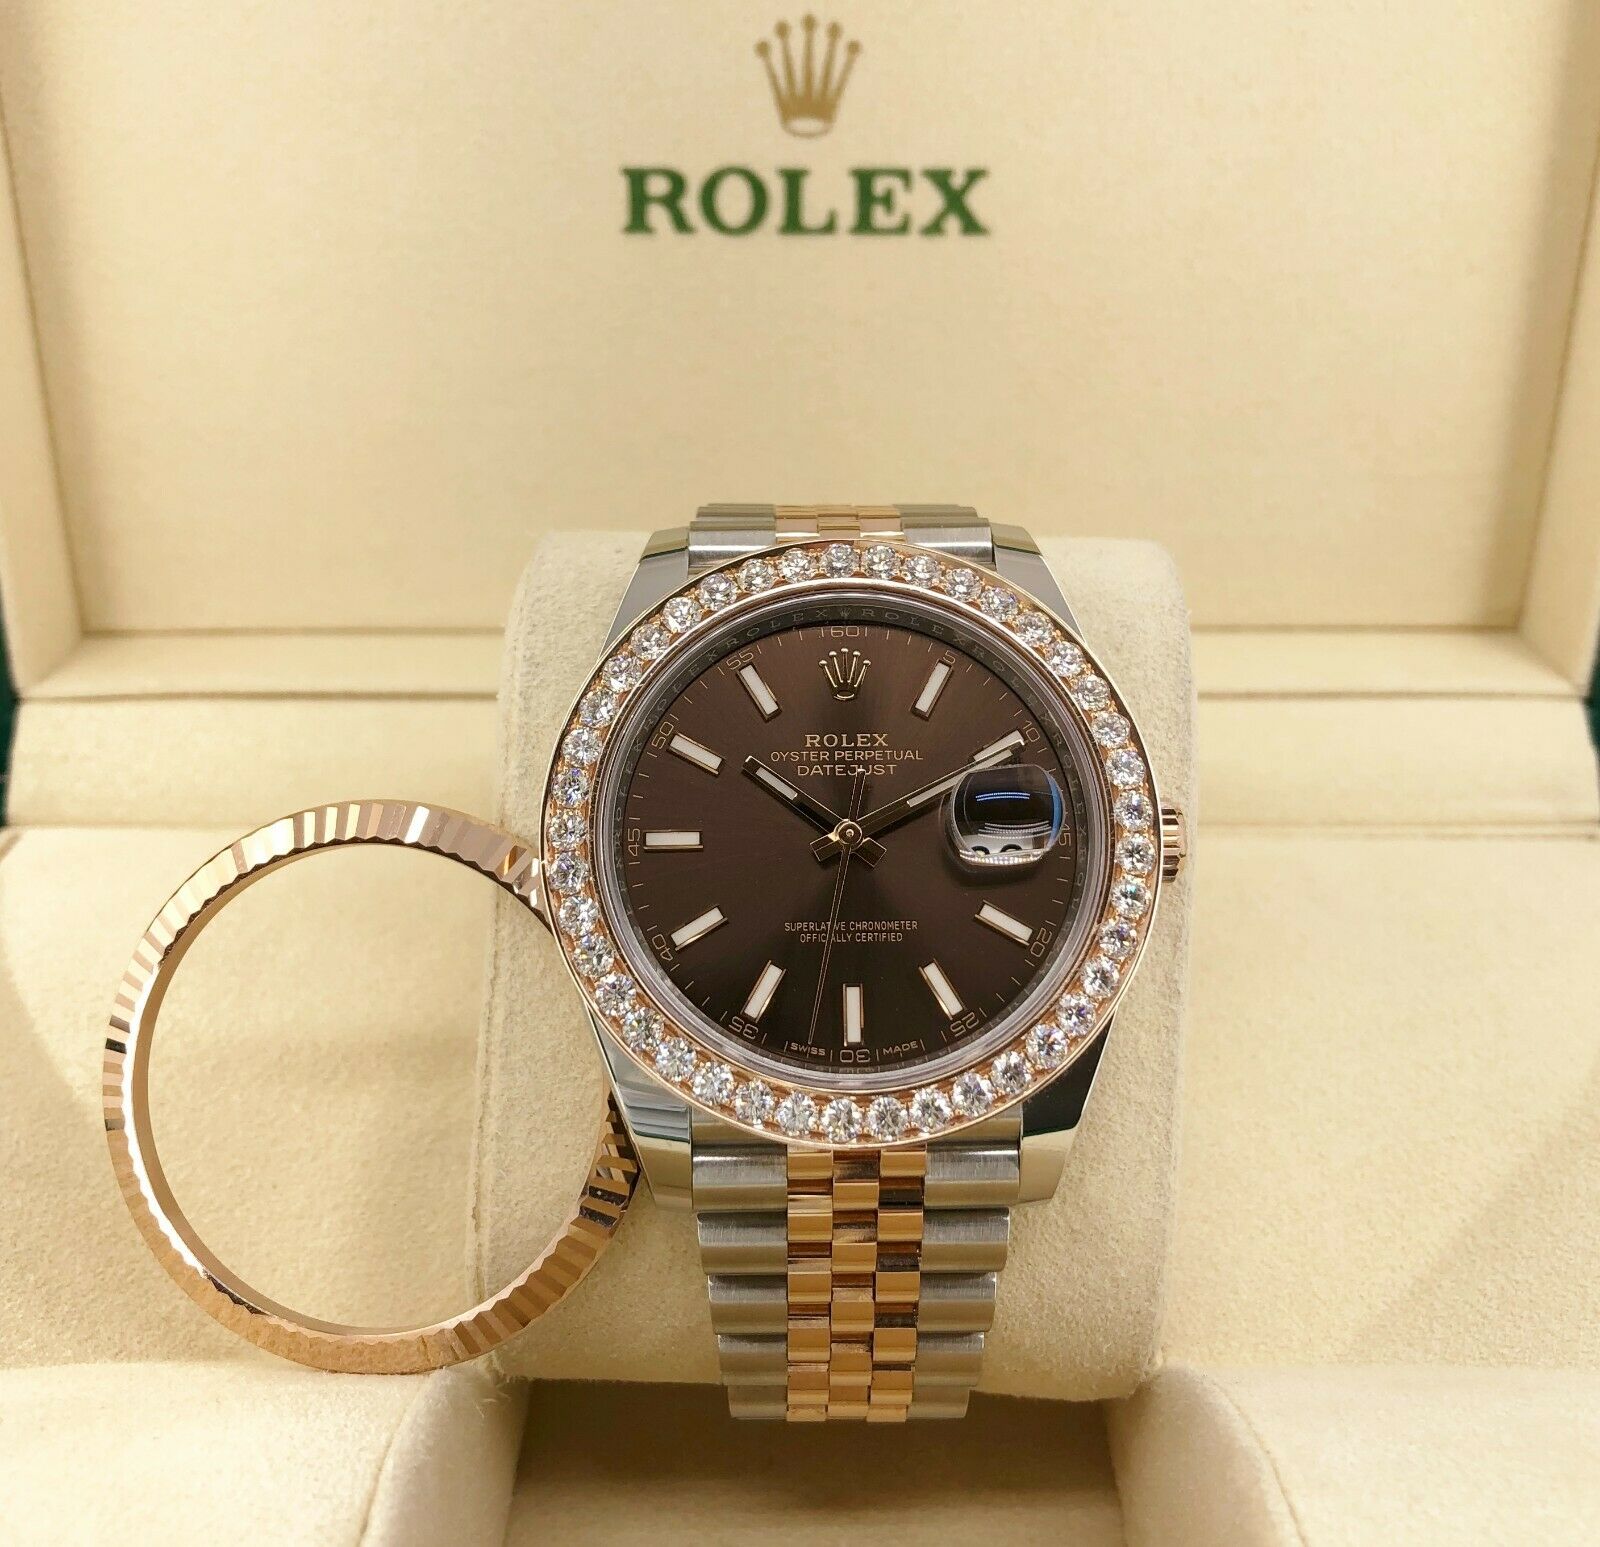 Rolex Datejust Jubilee 41mm - Rose Gold & Steel - Diamond